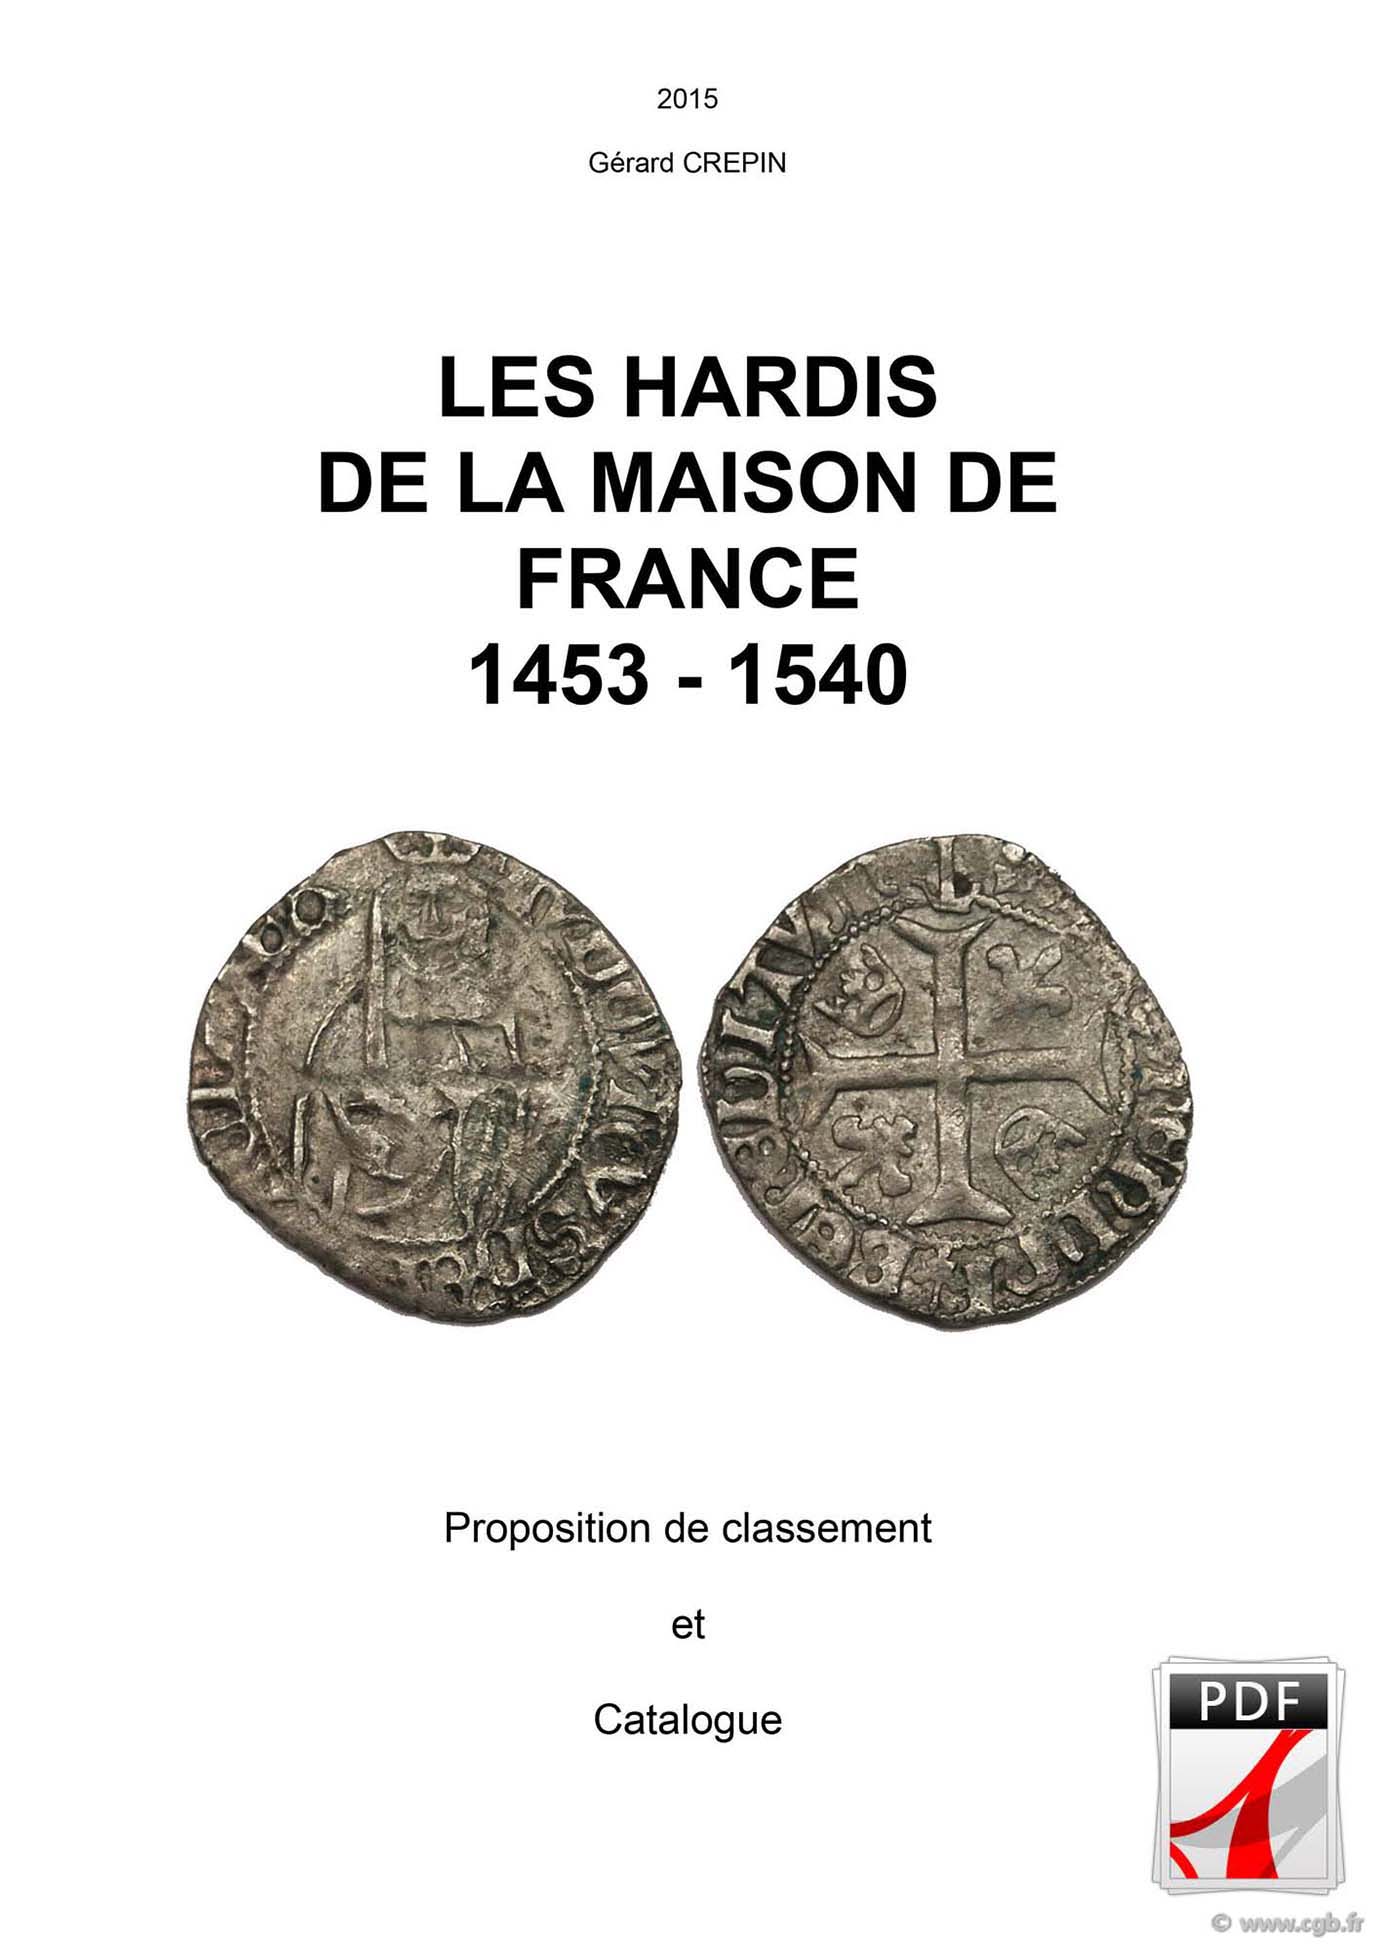 Les hardis de la Maison de France, 1453-1540 CRÉPIN Gérard